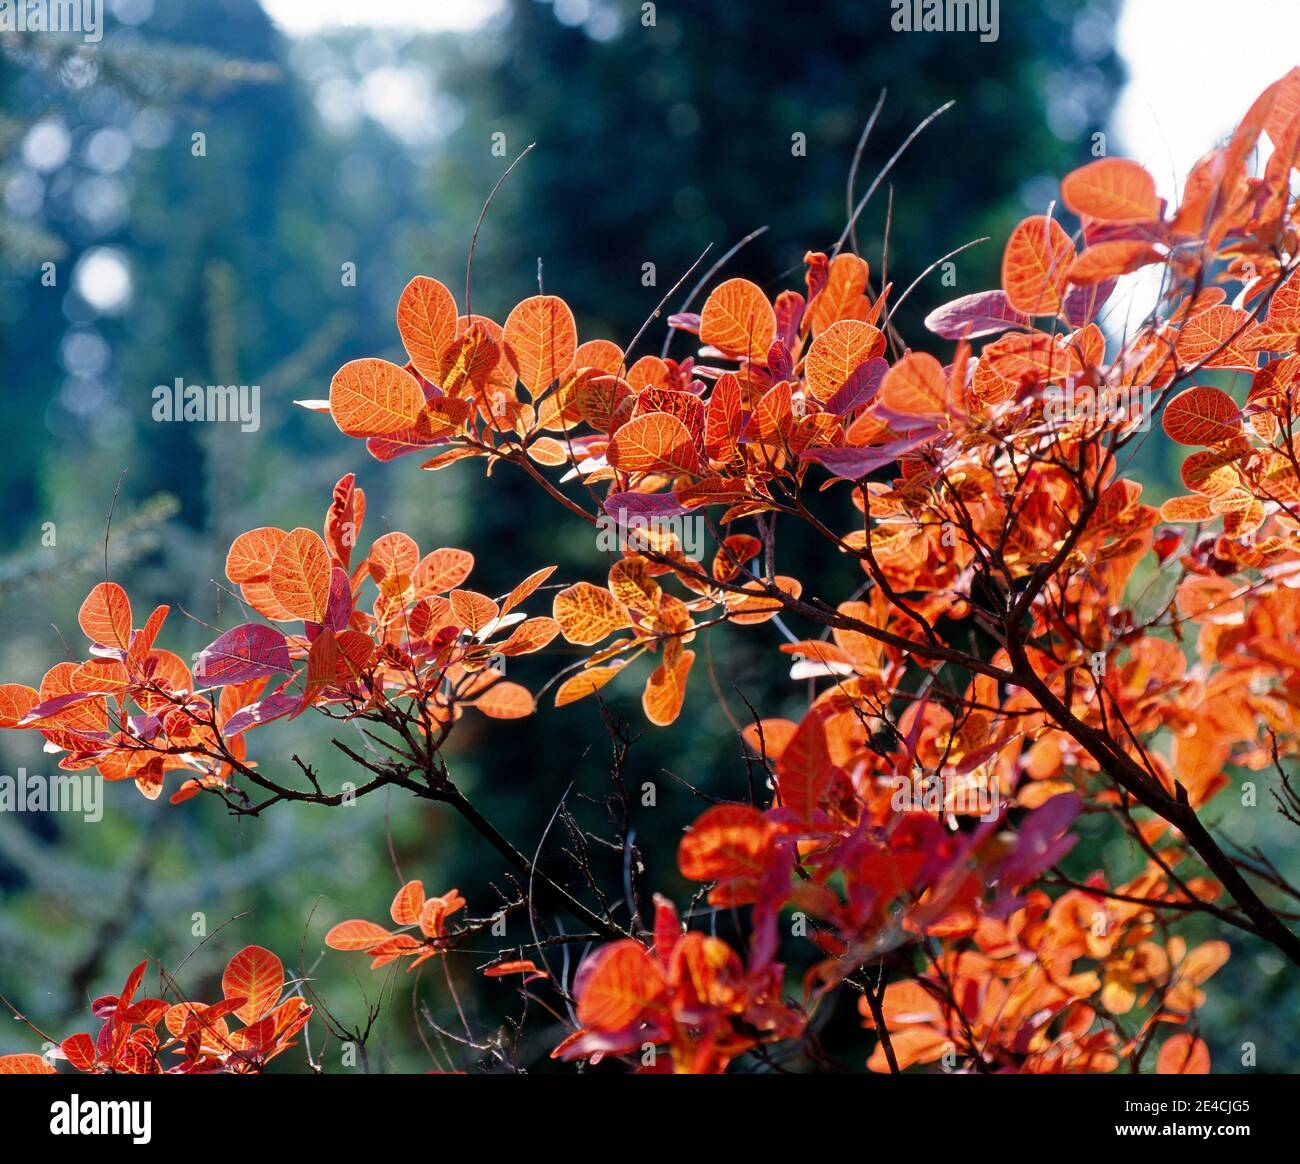 Pelucas en otoño con follaje rojo decorativo en el jardín Foto de stock